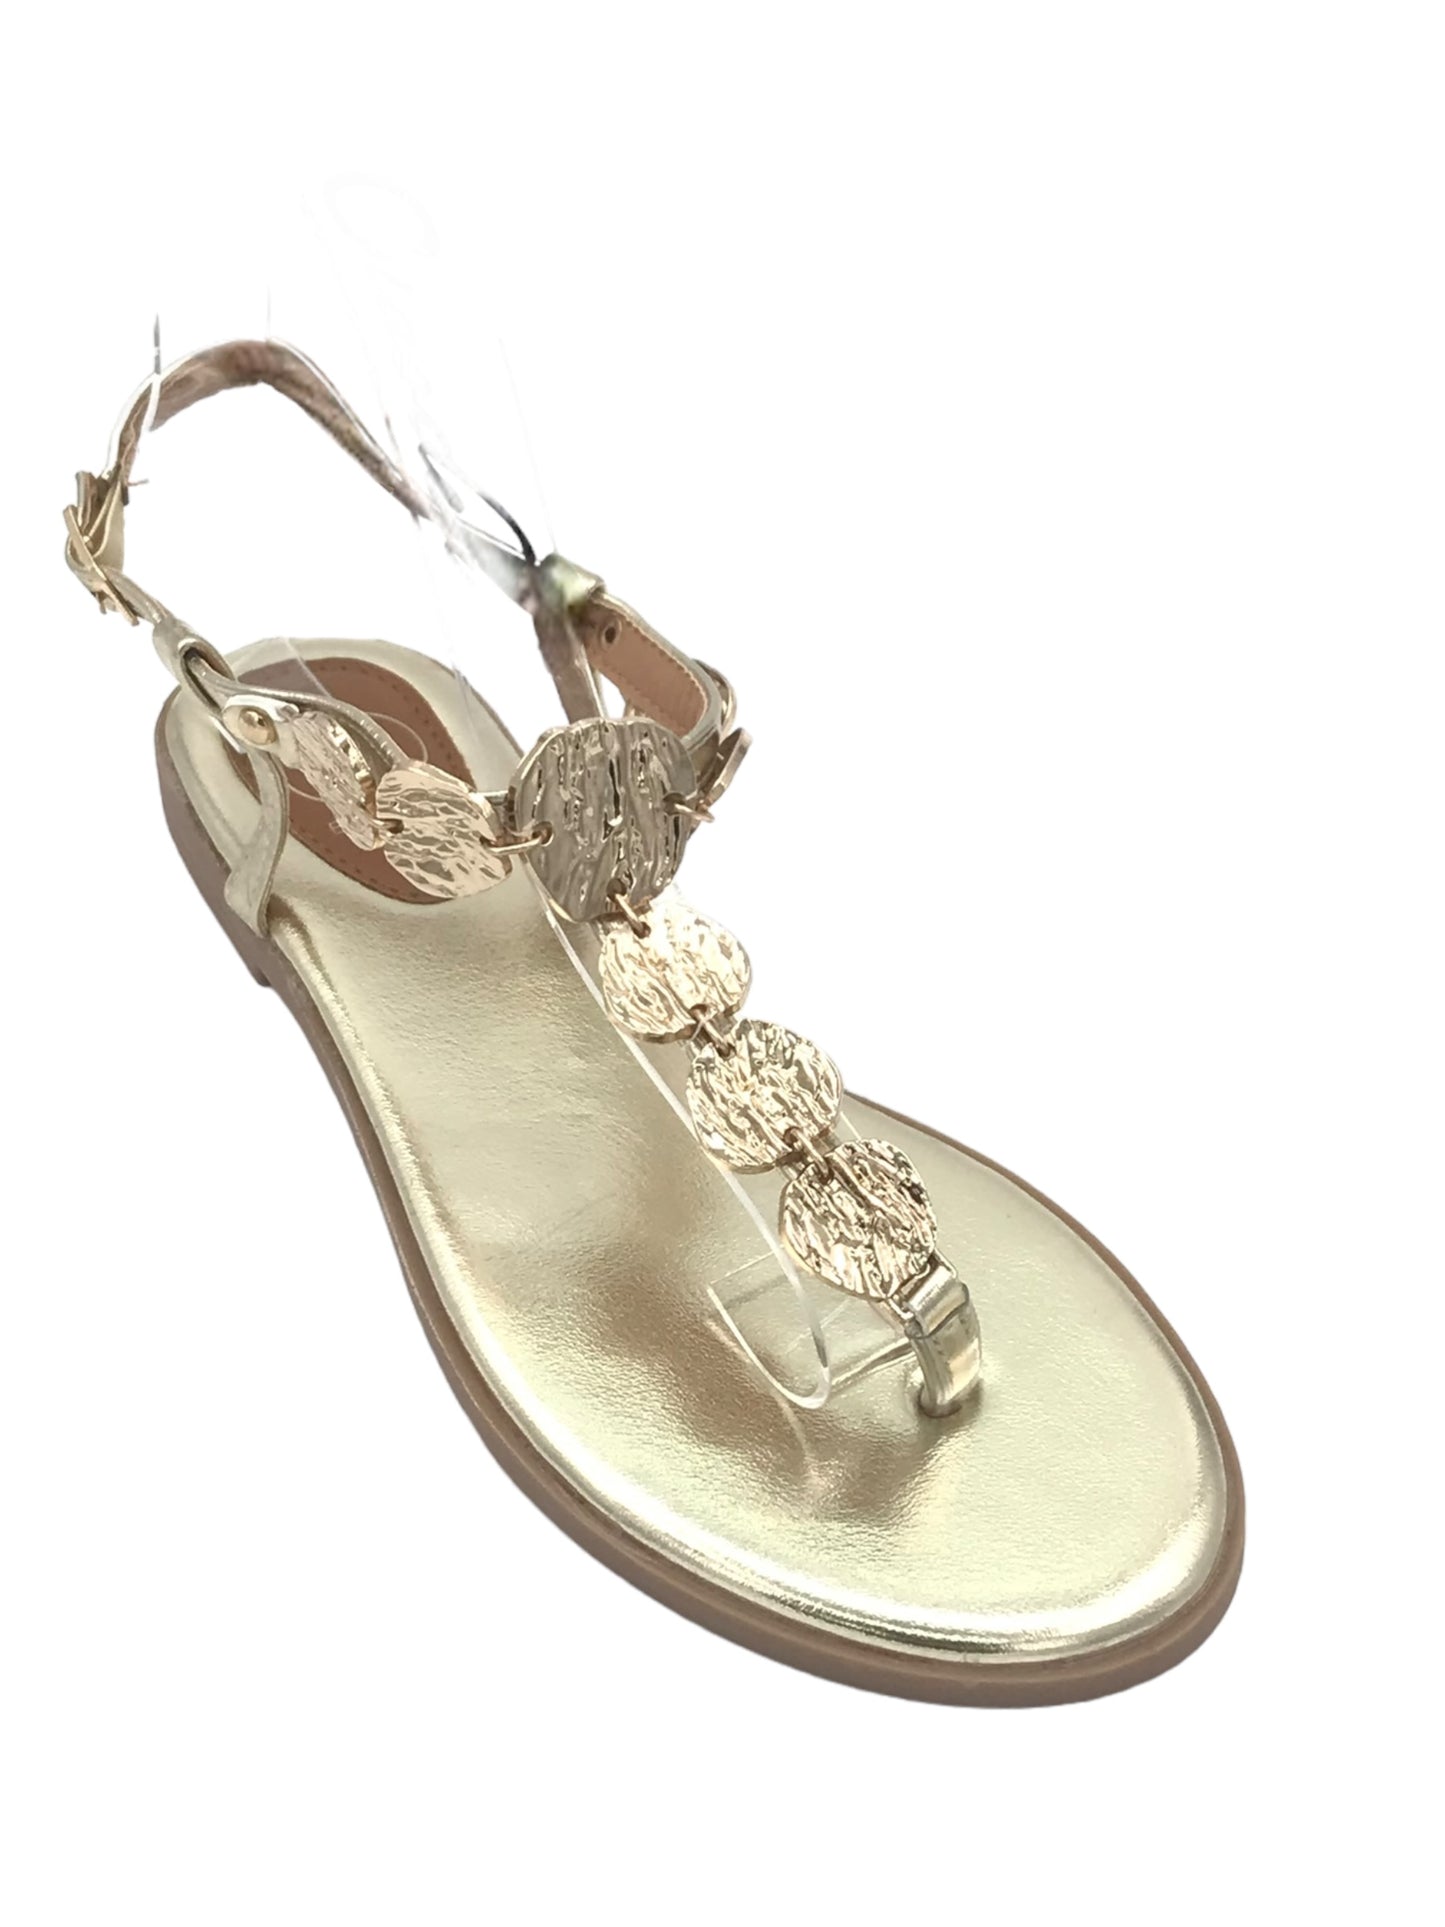 Sandalo medaglioni oro - Scarpe - Stilosa